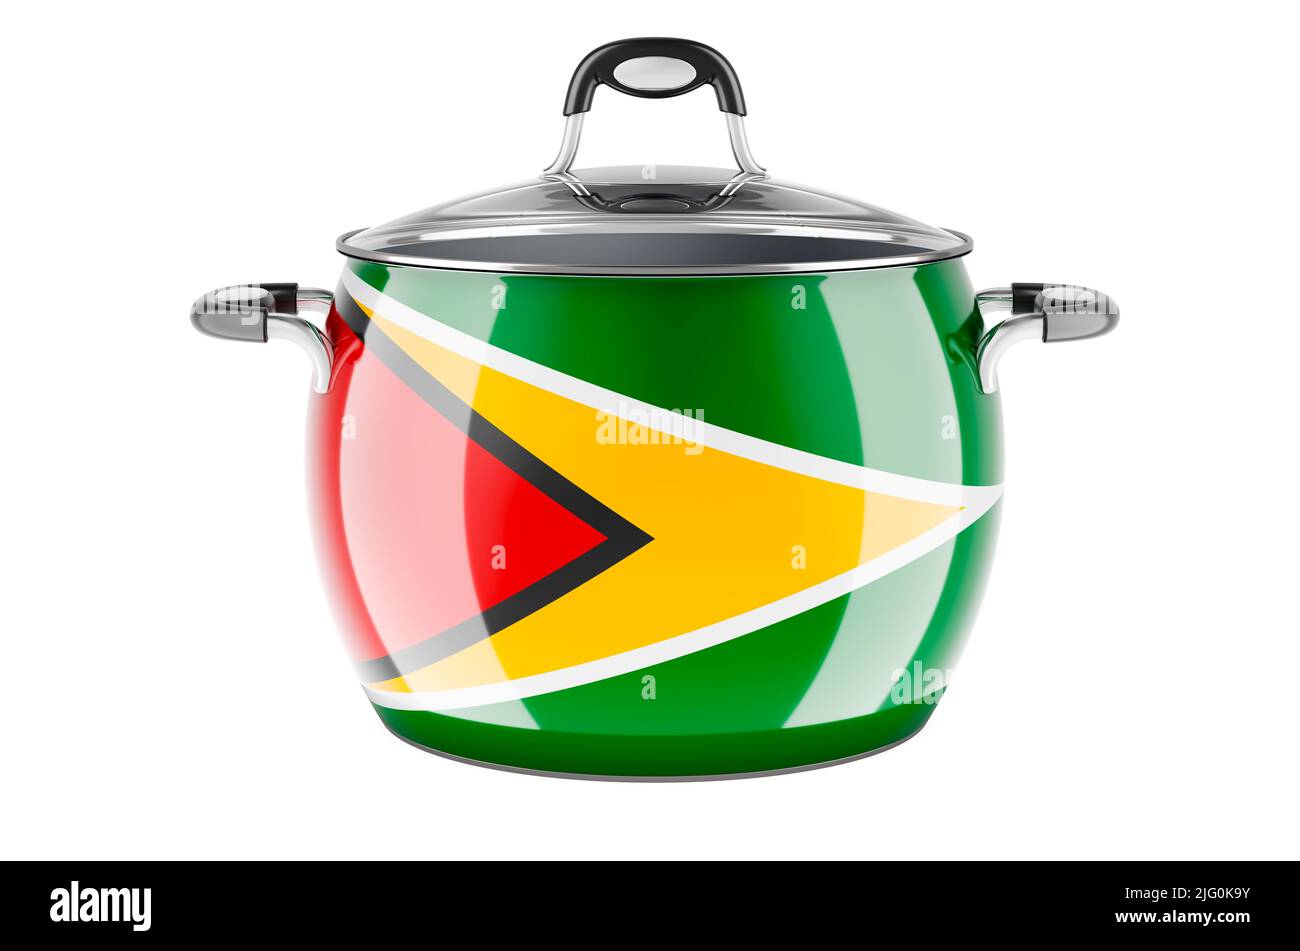 Konzept der guyanischen nationalen Küche. Guyanische Flagge auf dem Edelstahltopf lackiert. 3D Darstellung isoliert auf weißem Hintergrund Stockfoto